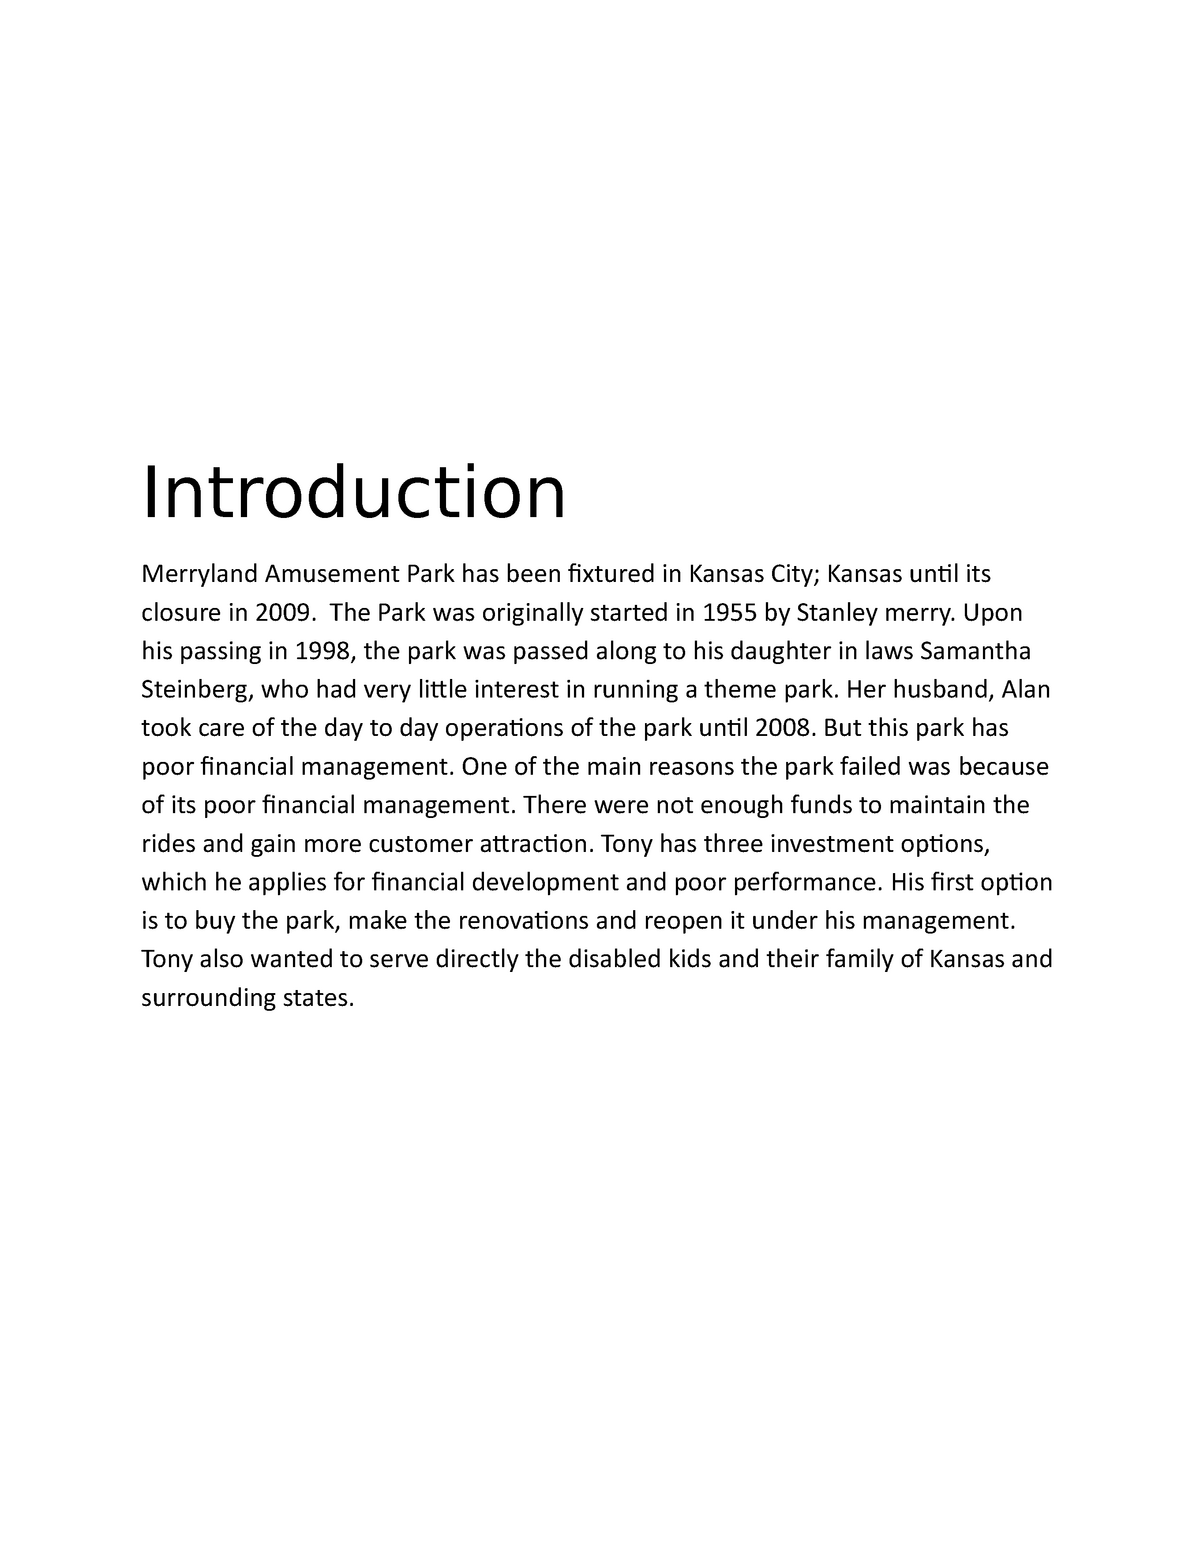 merryland amusement park case study 2009 solution